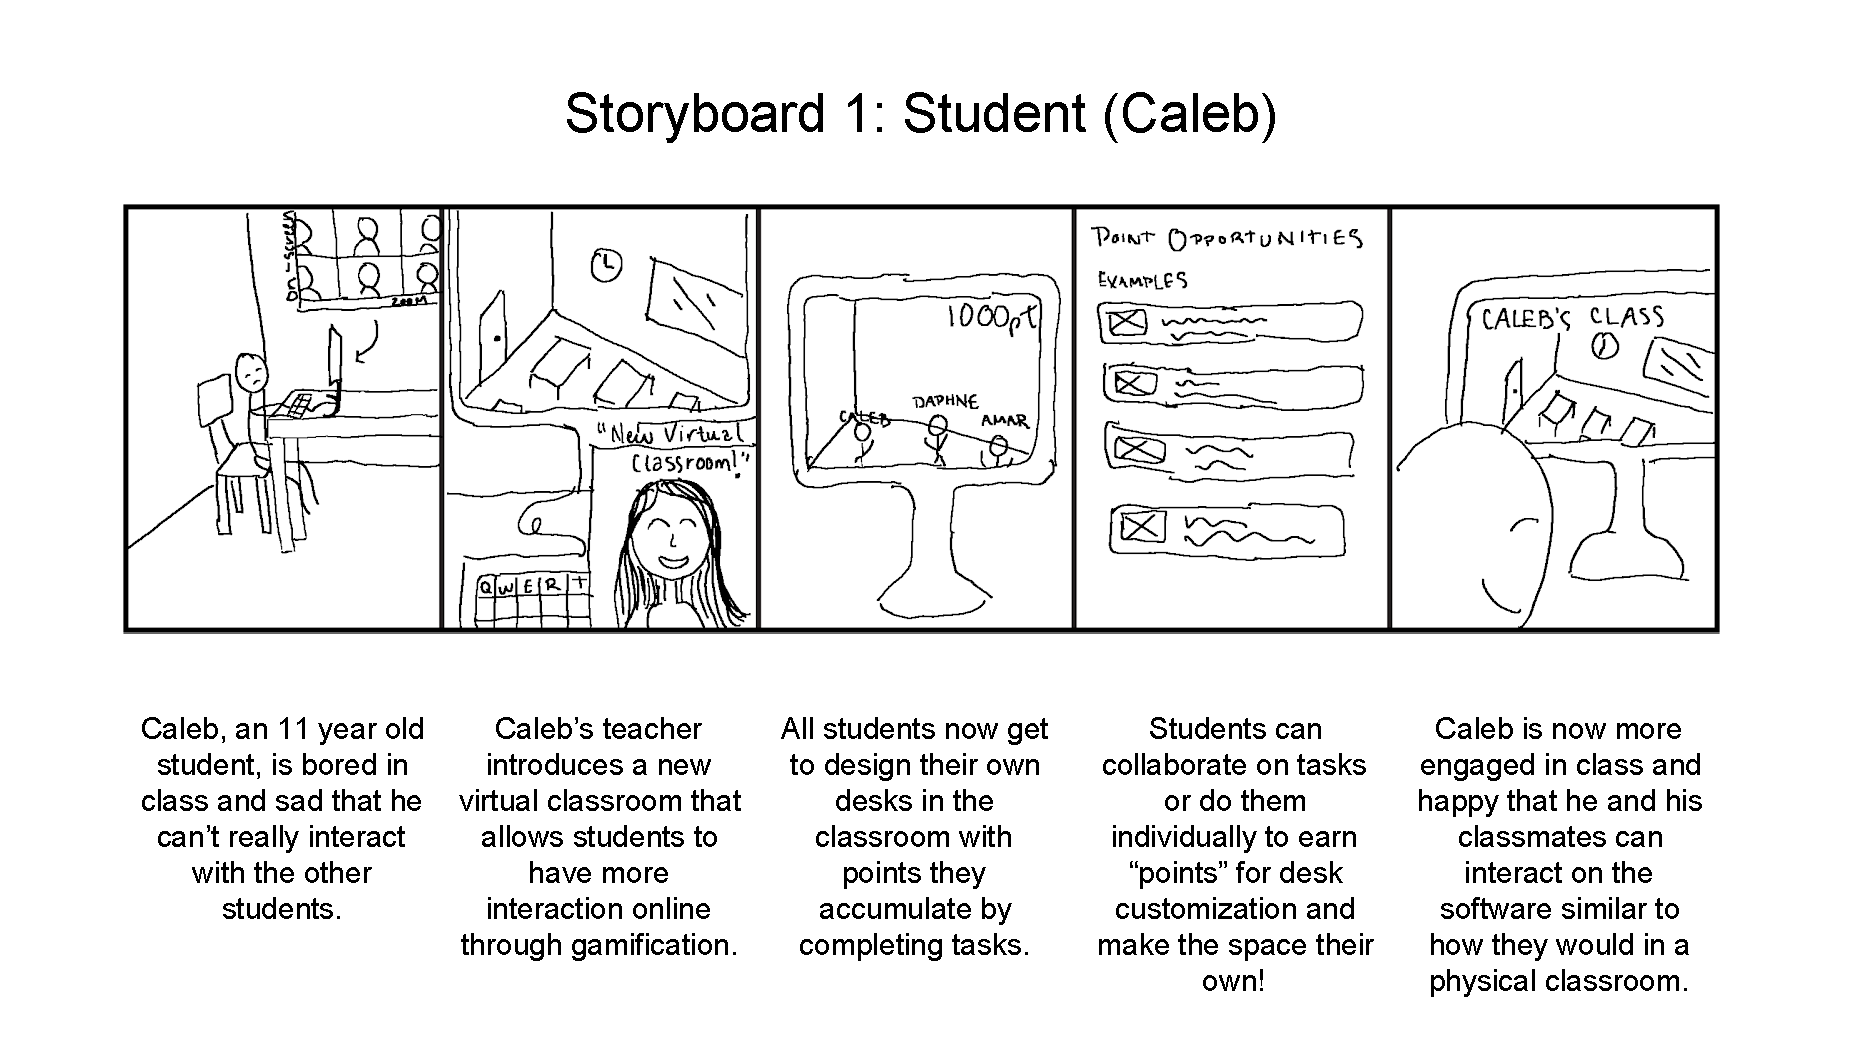 Storyboard describing a child's interaction